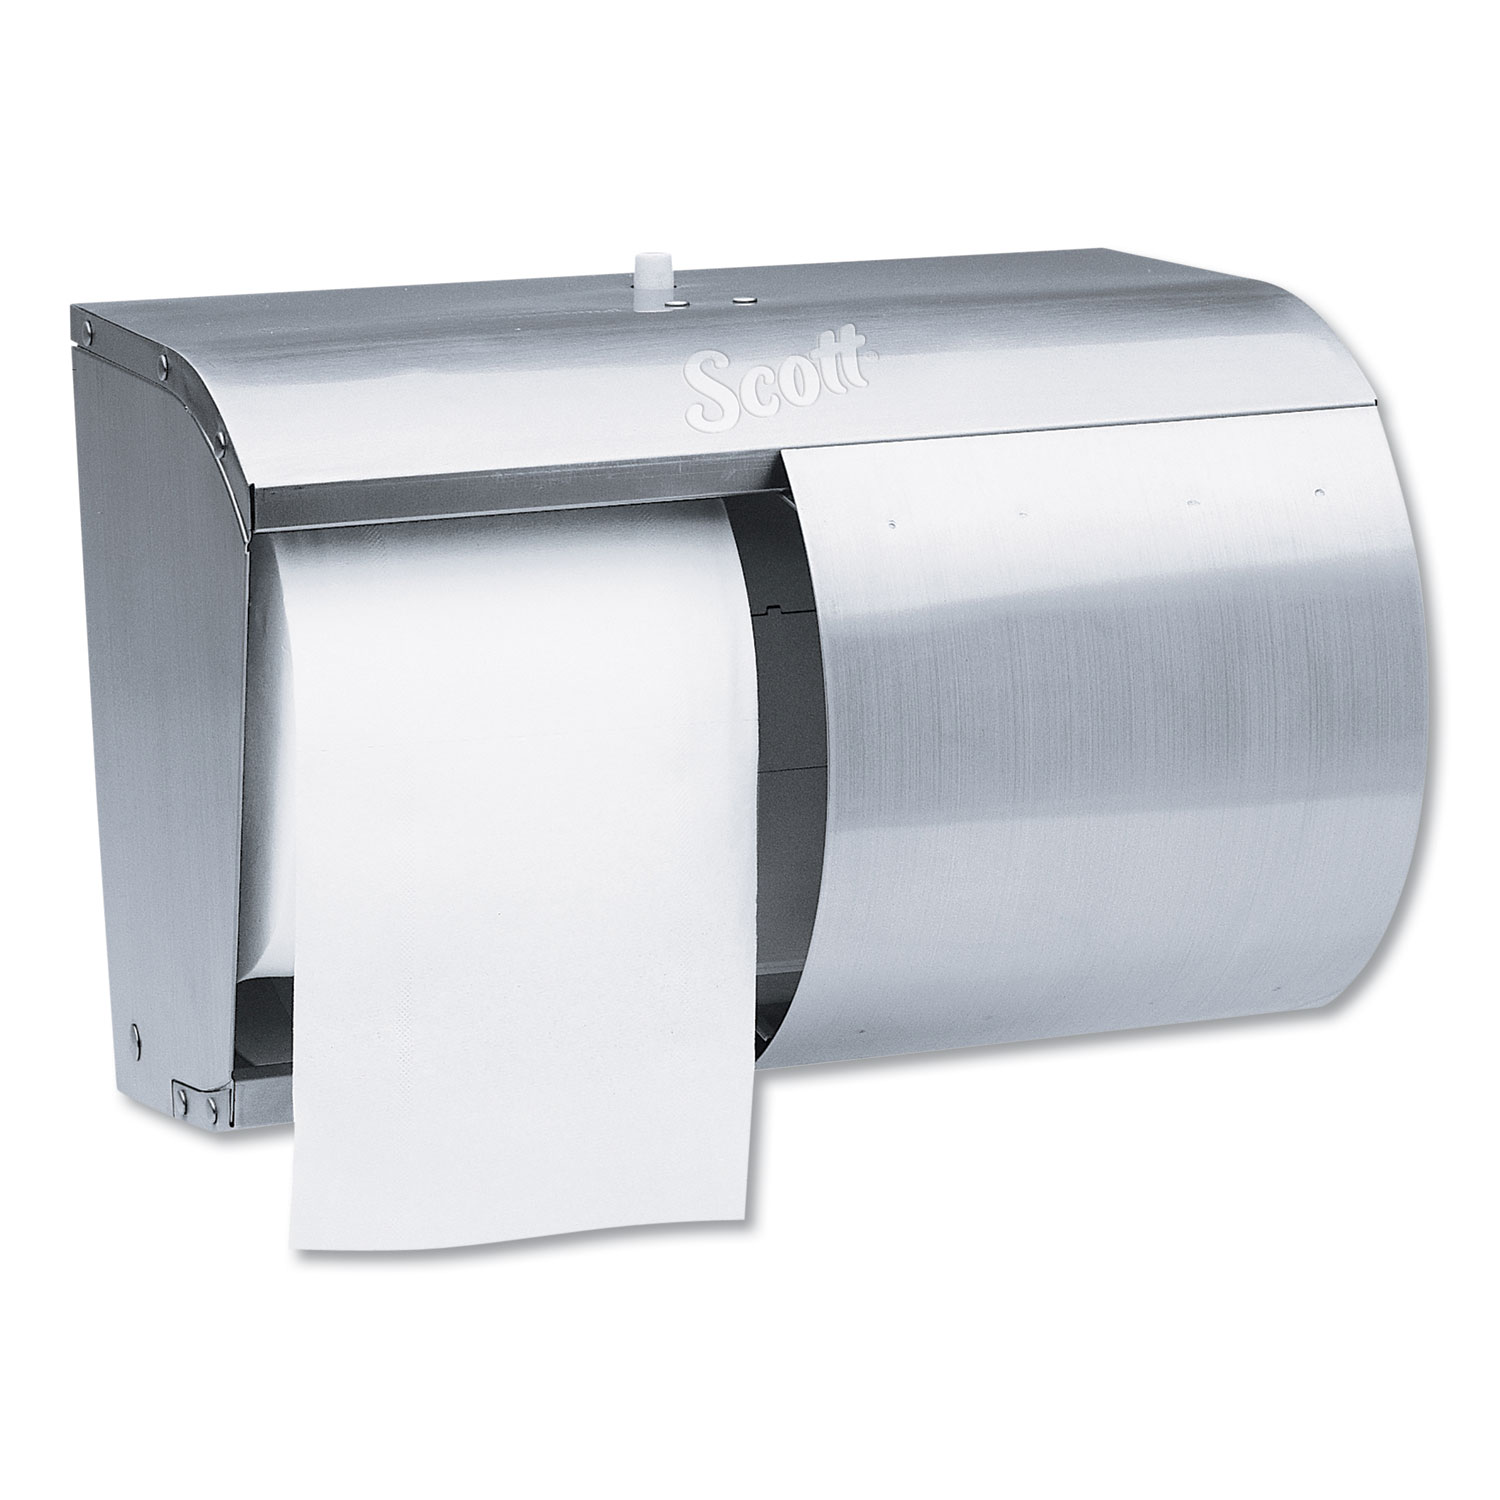  Scott 09606 Pro Coreless SRB Tissue Dispenser, 7 1/10 x 10 1/10 x 6 2/5, Stainless Steel (KCC09606) 